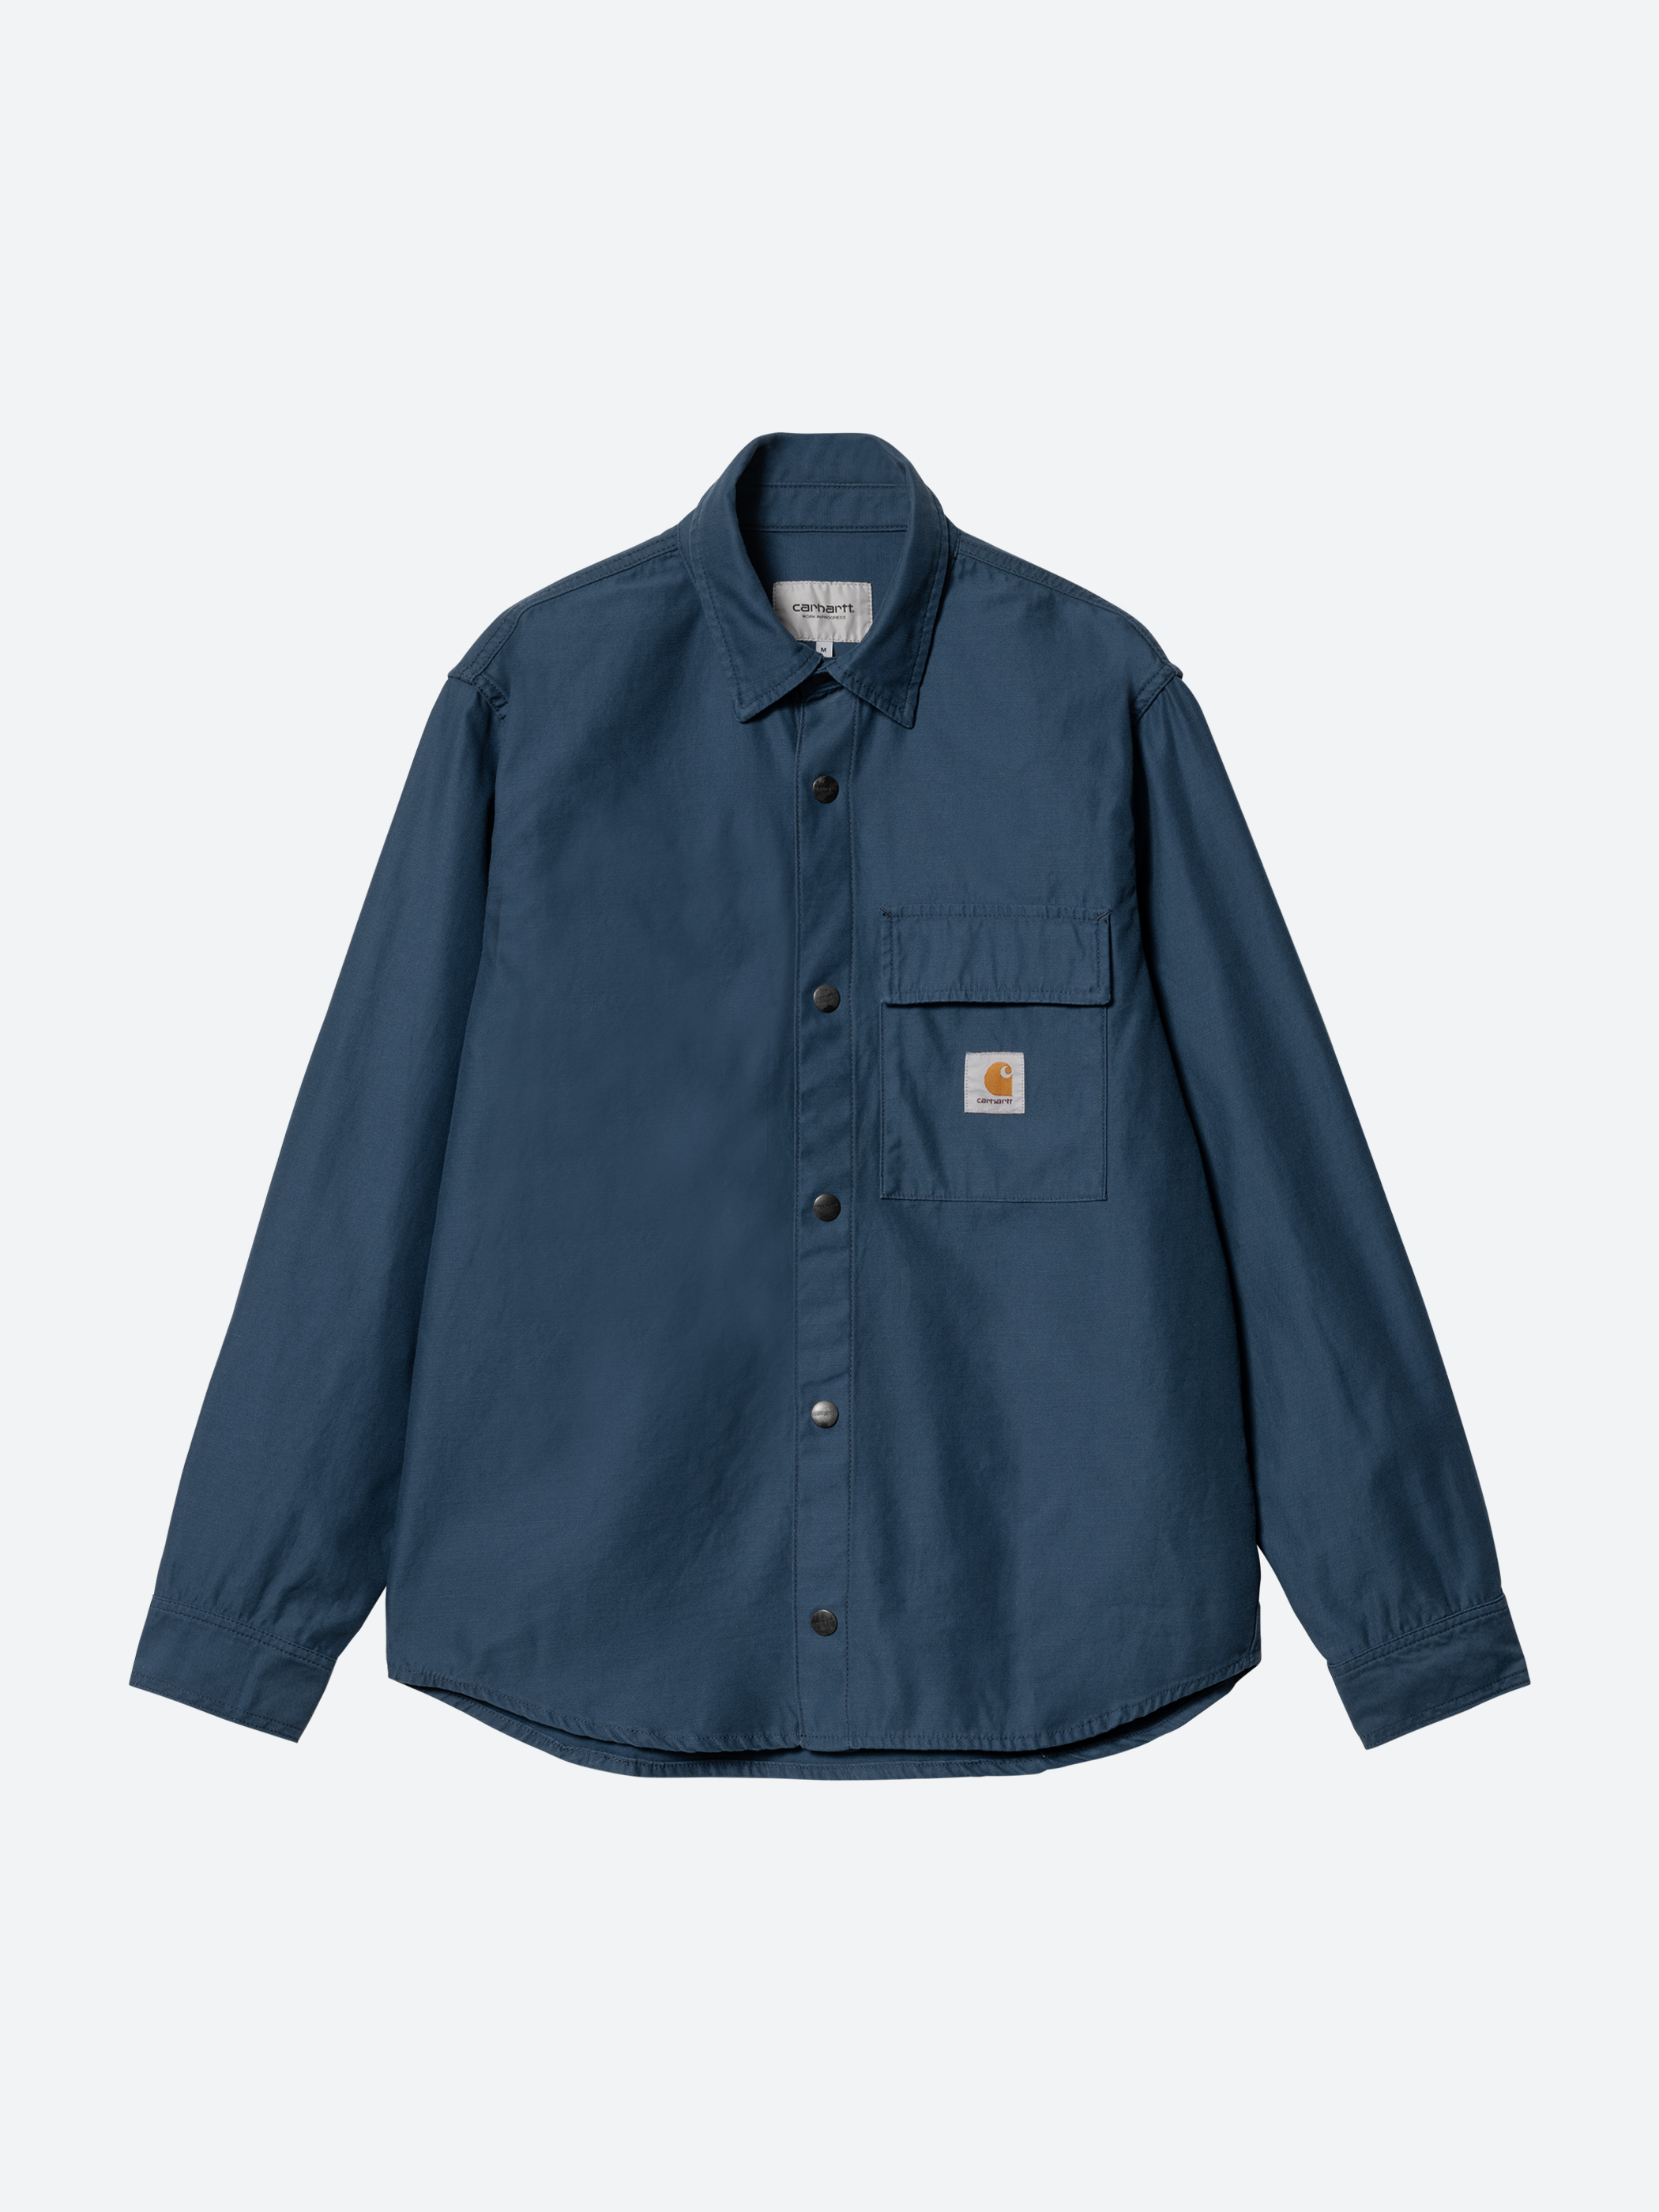 Hayworth Shirt Jacket